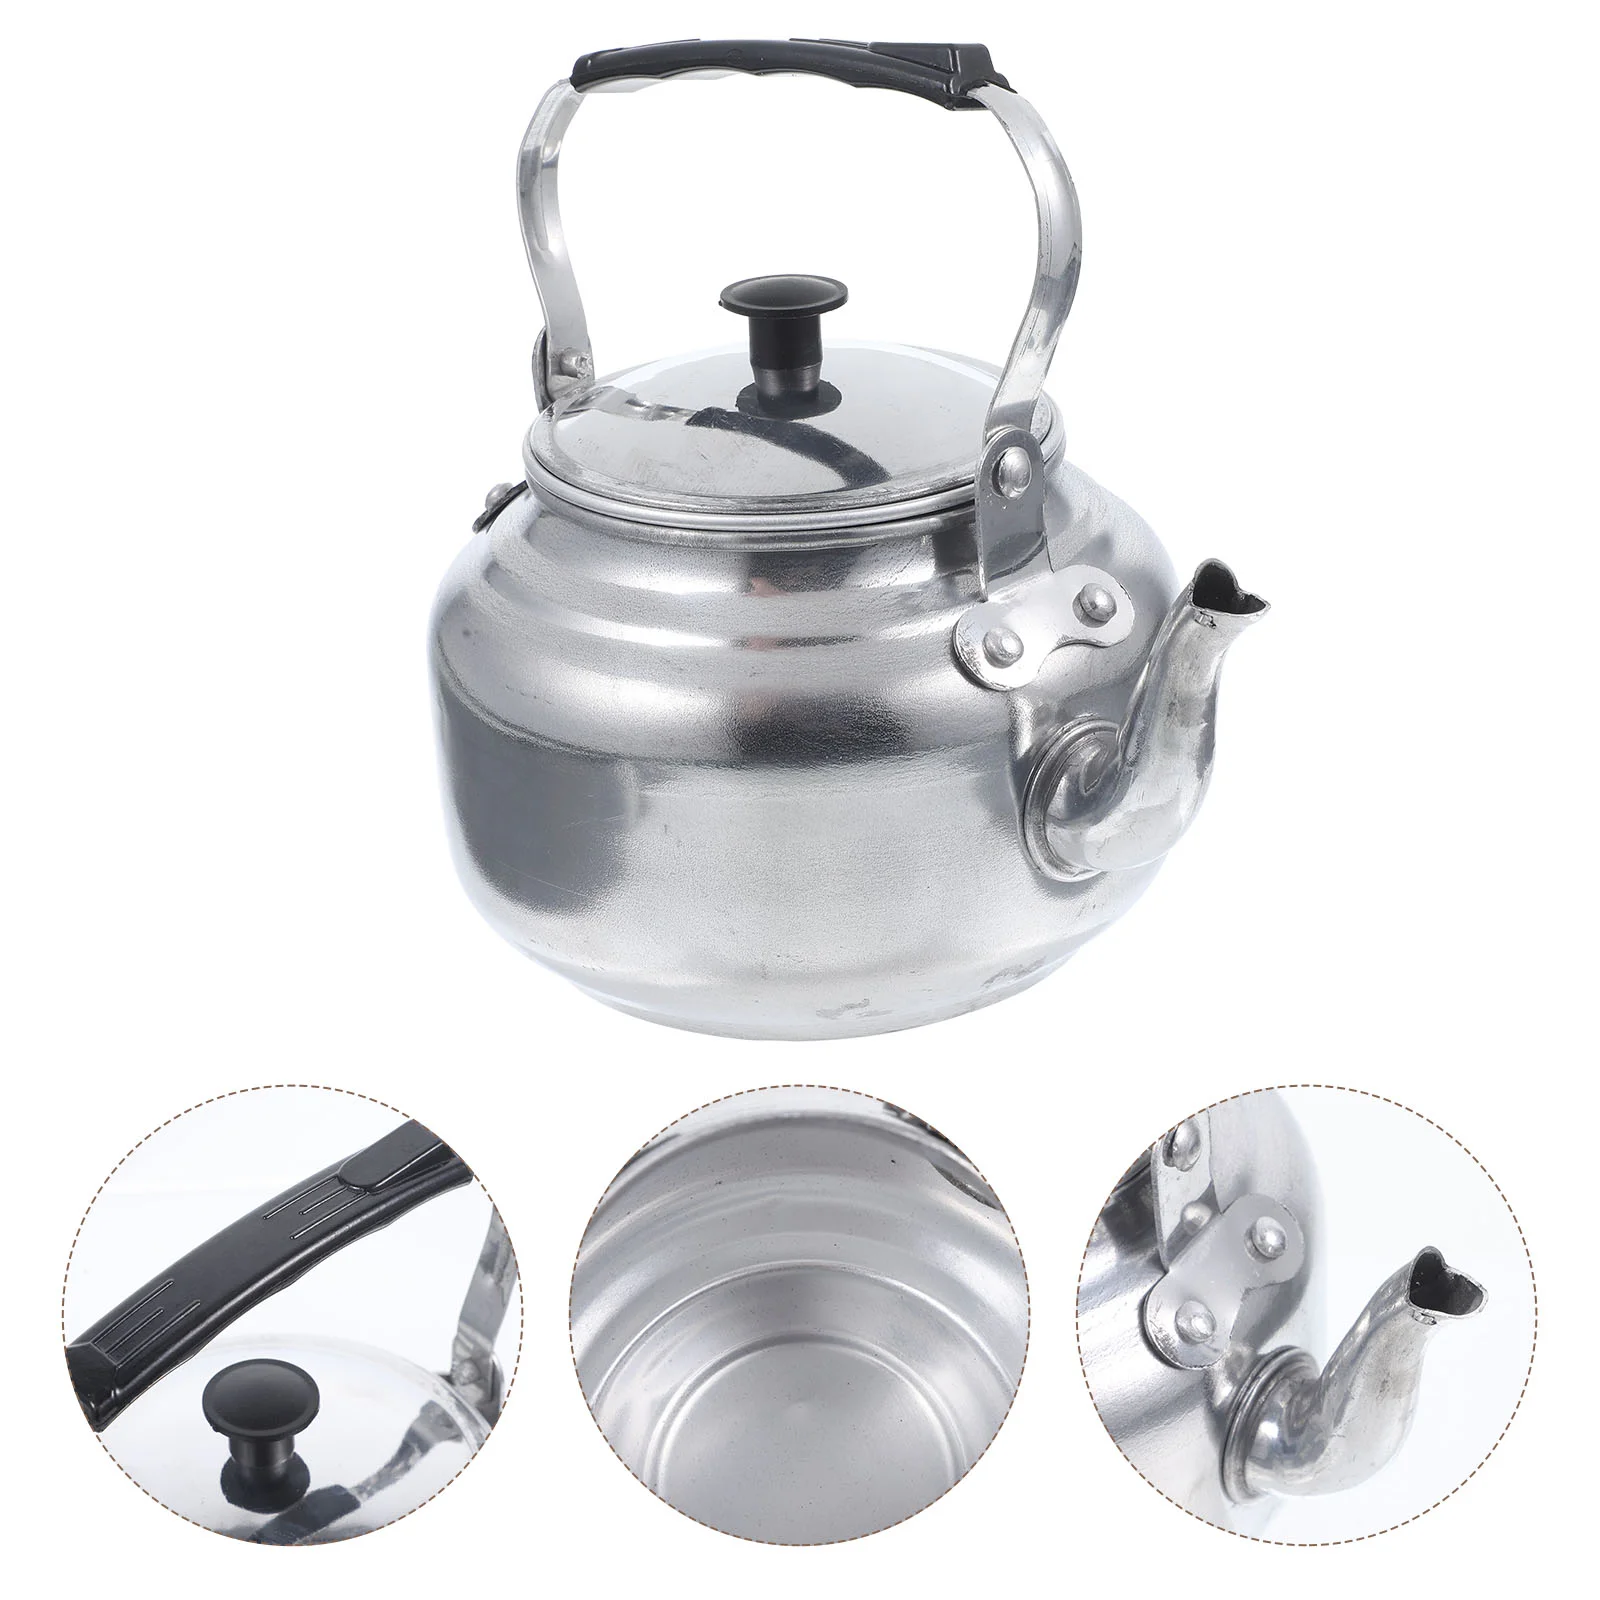 

Металлический чайник, мини портативный подогреватель, кухонный чайник для кофе, домашний износостойкий чайник из алюминиевого сплава для ежедневного использования